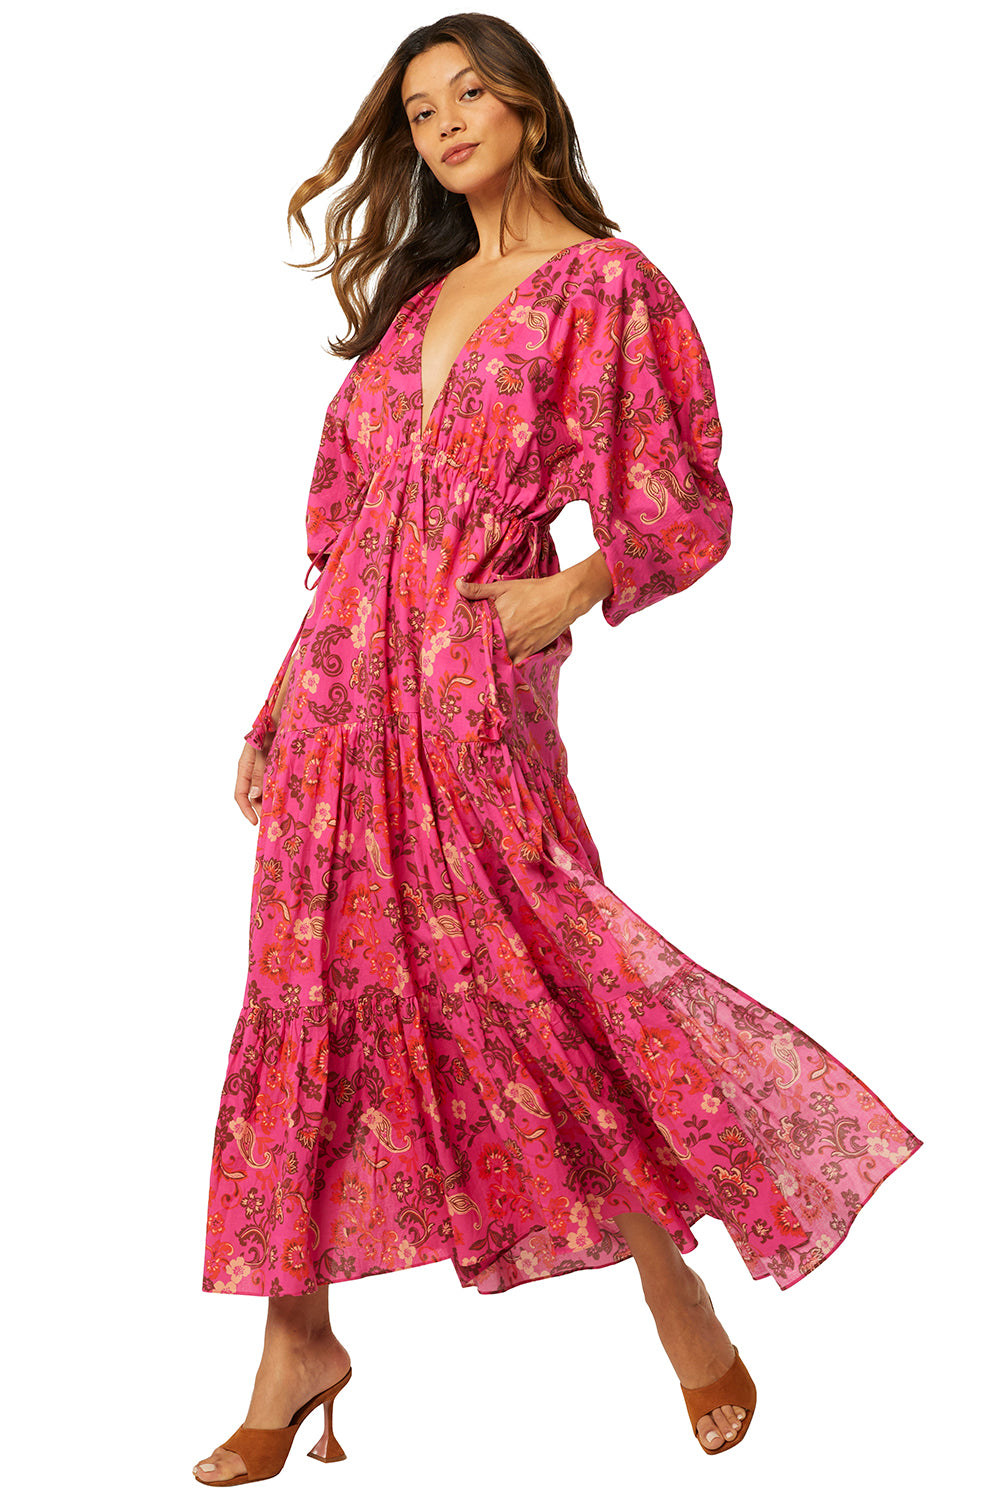 Misa - Ysabel Dress in Careyes Flora Cotton